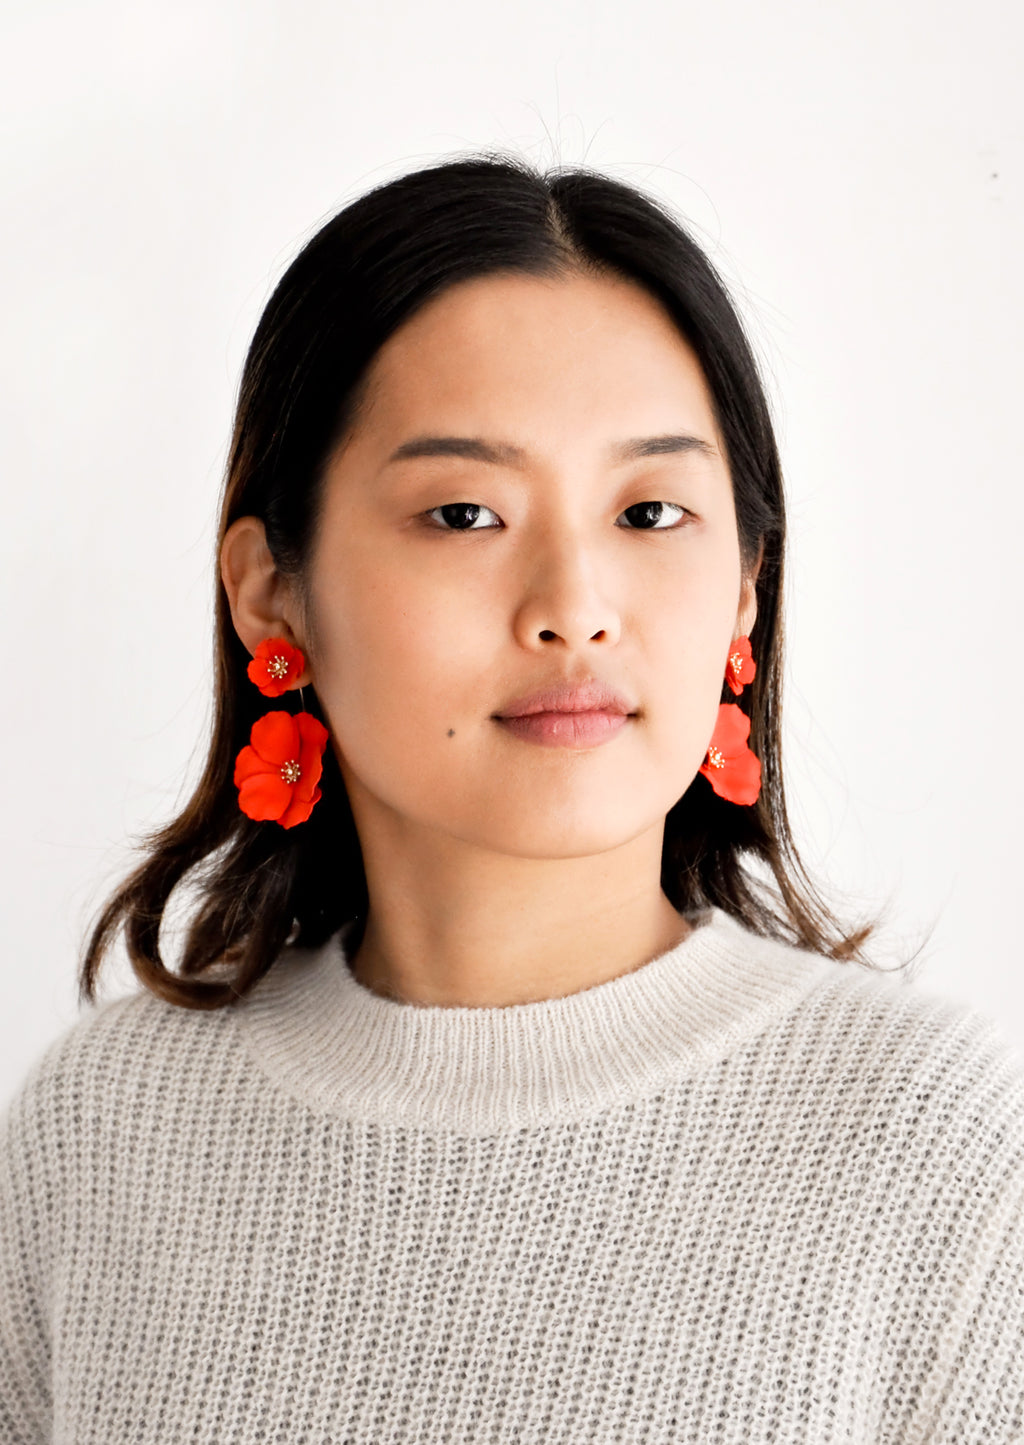 5: Model wears poppy red flower earrings and gray sweater.